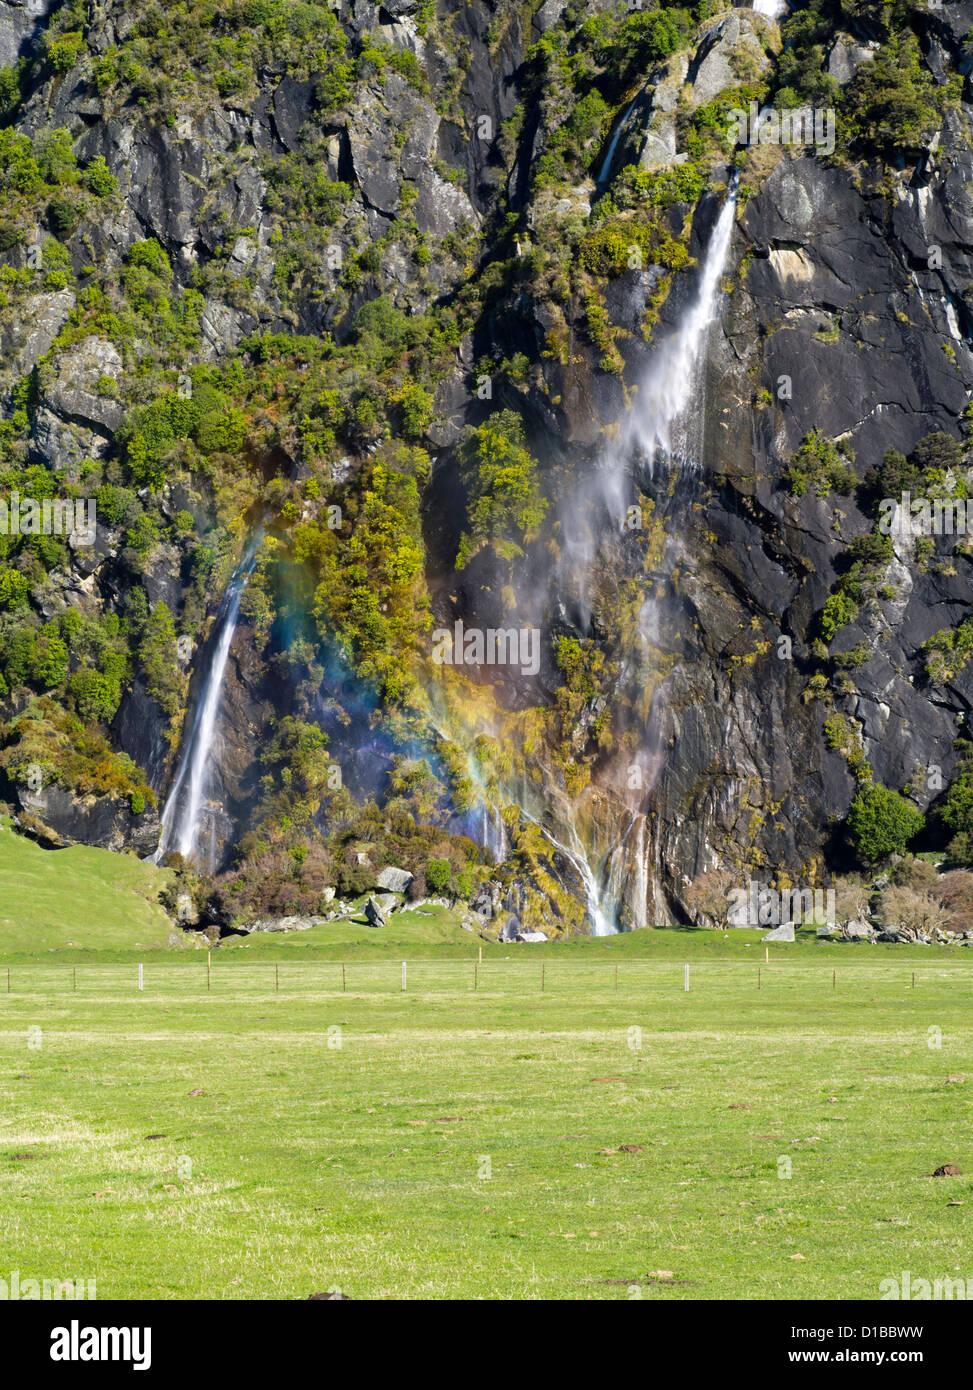 Vista de la horqueta falls, Harris Mountains, a lo largo del río matukituki, cerca del monte parque nacional y aspirantes a Wanaka, Nueva Zelanda Foto de stock